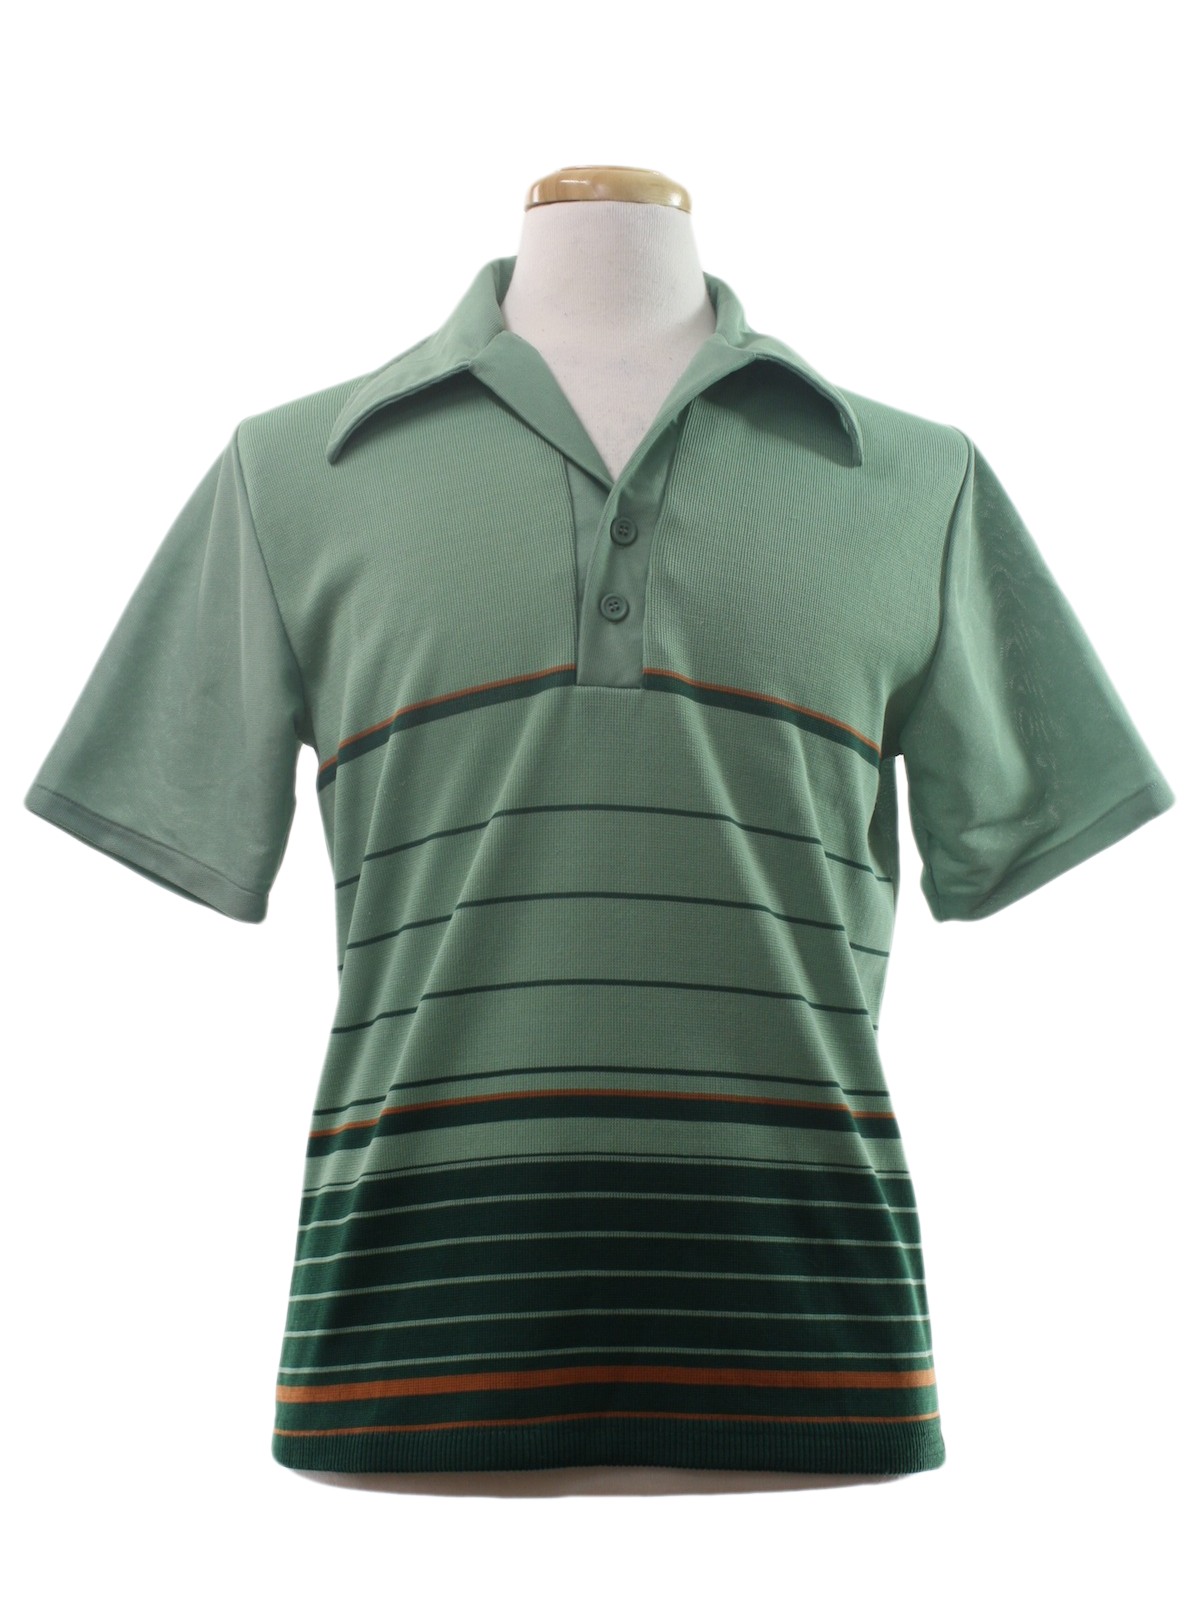 Retro 70s Knit Shirt (K) : 70s -K-Mart- Mens light moss, forest green ...